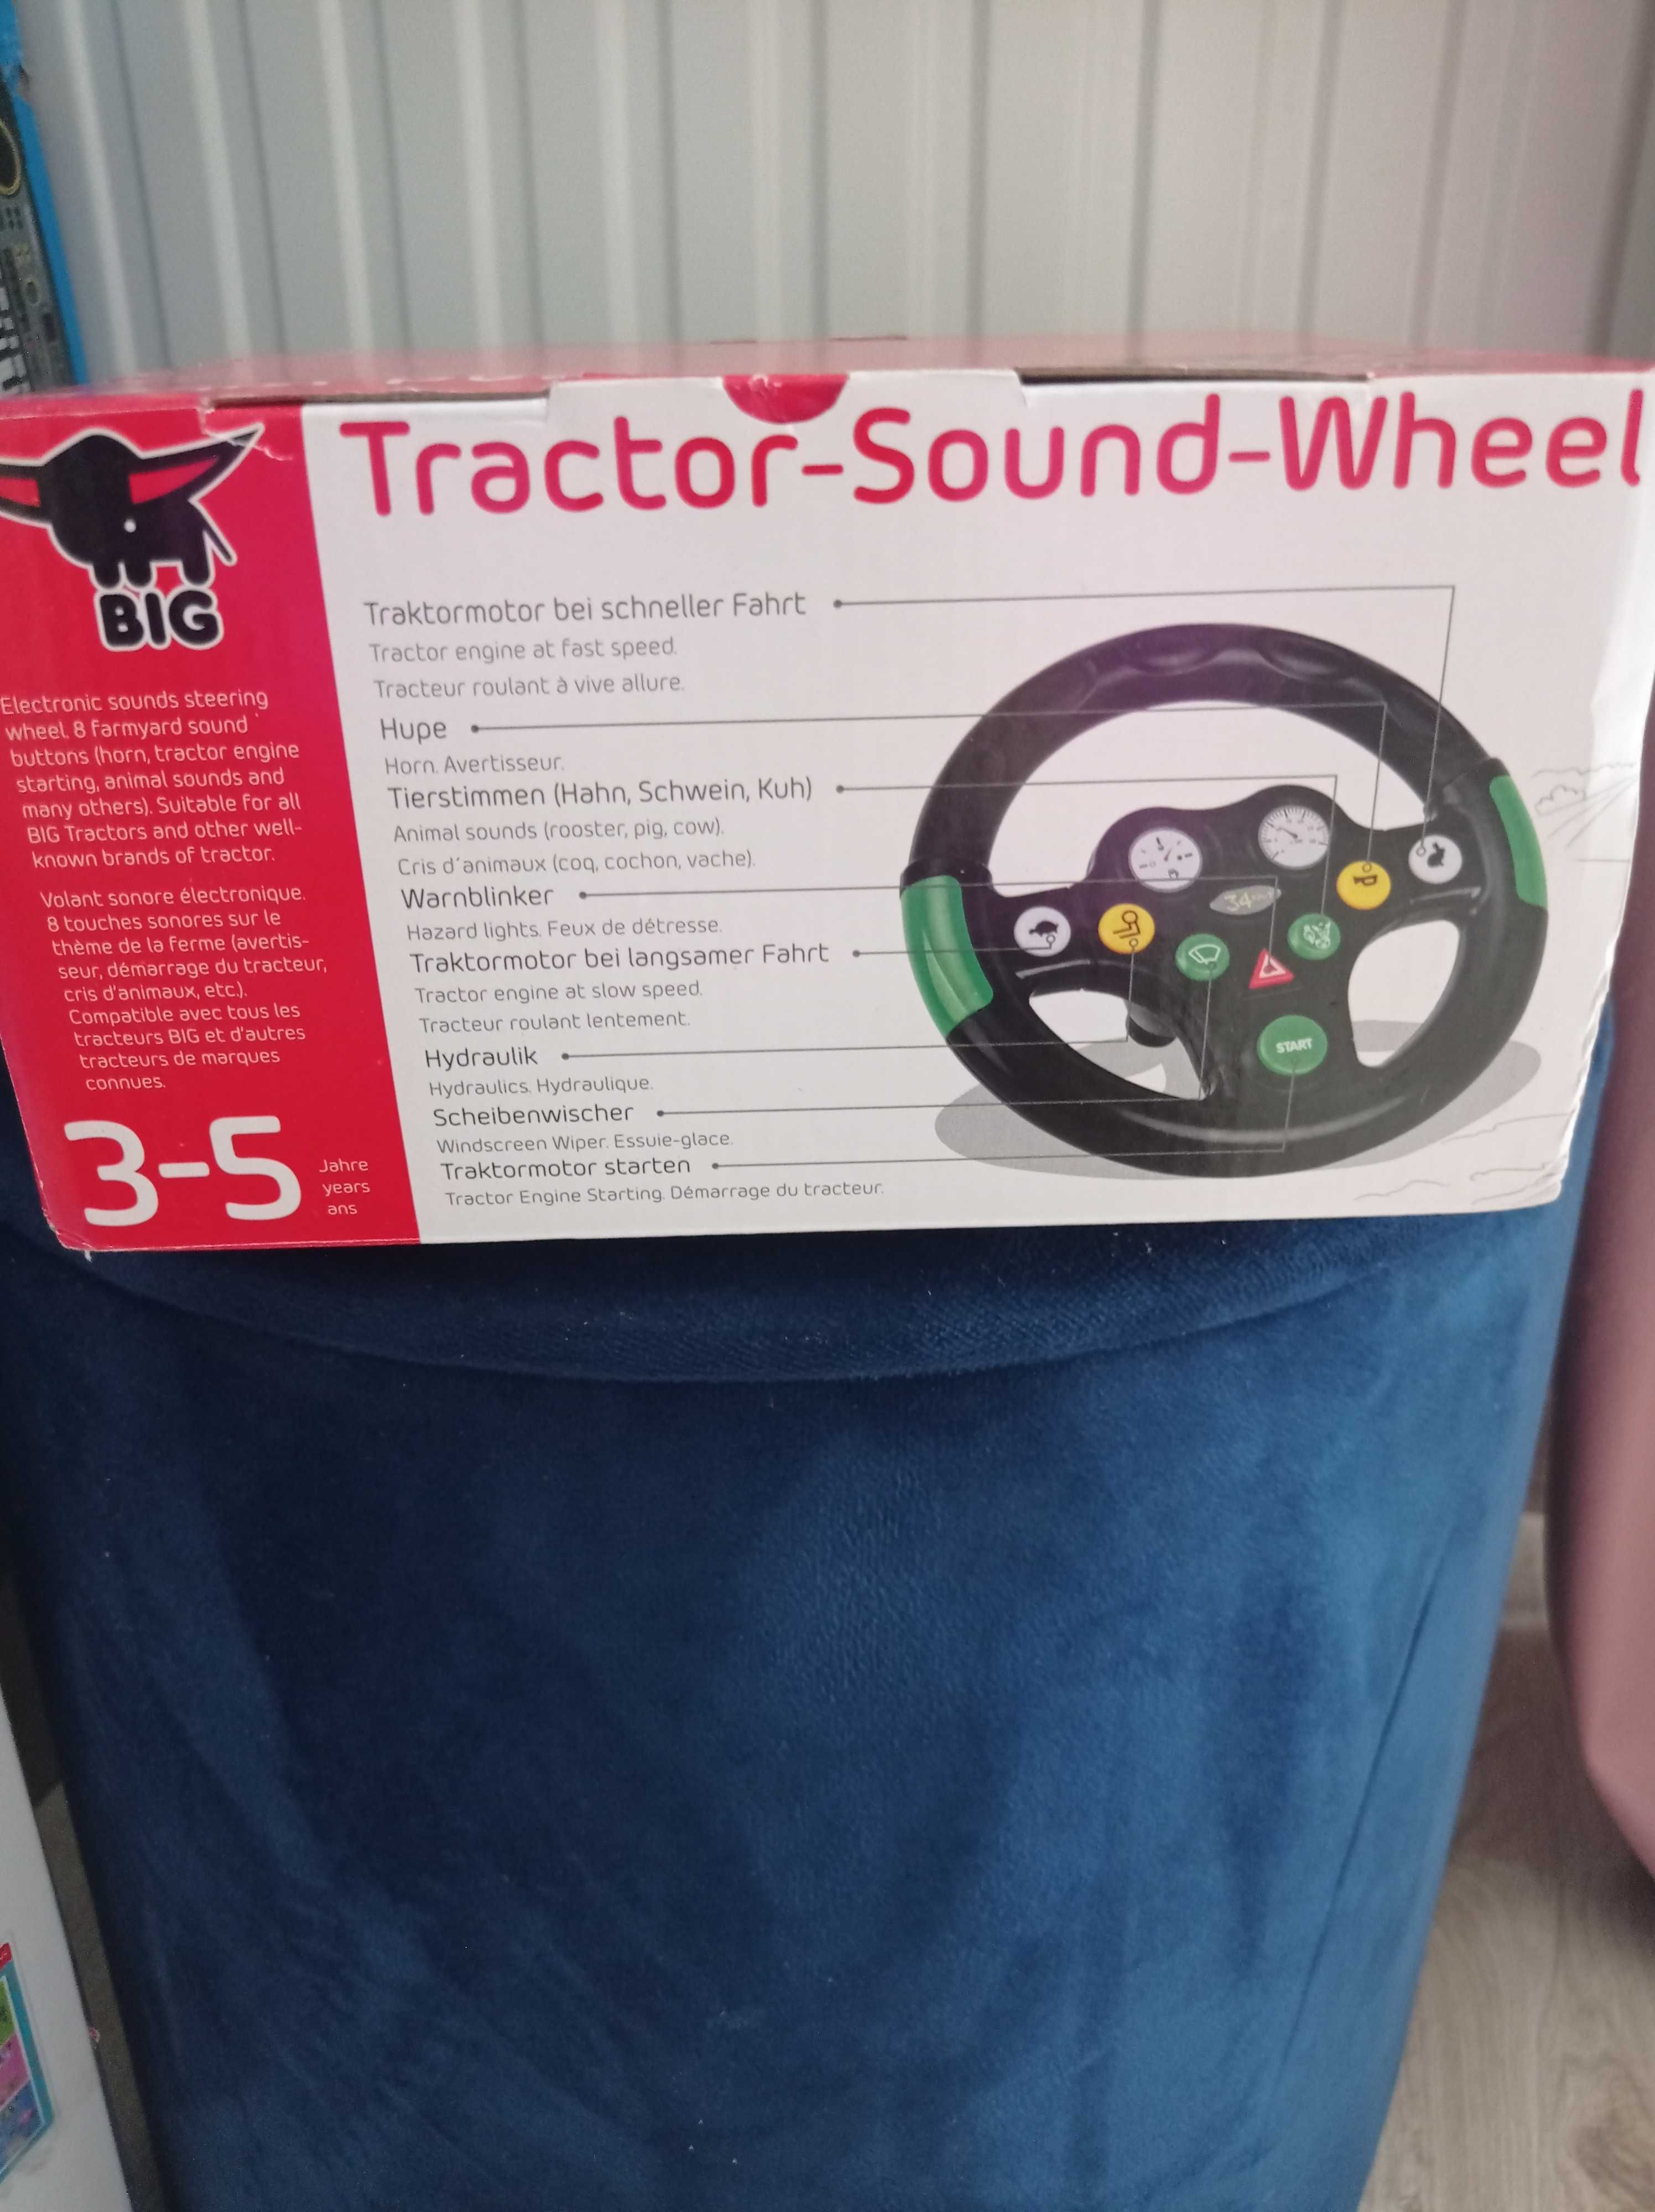 Kierownica Tractor sound wheel Marki •